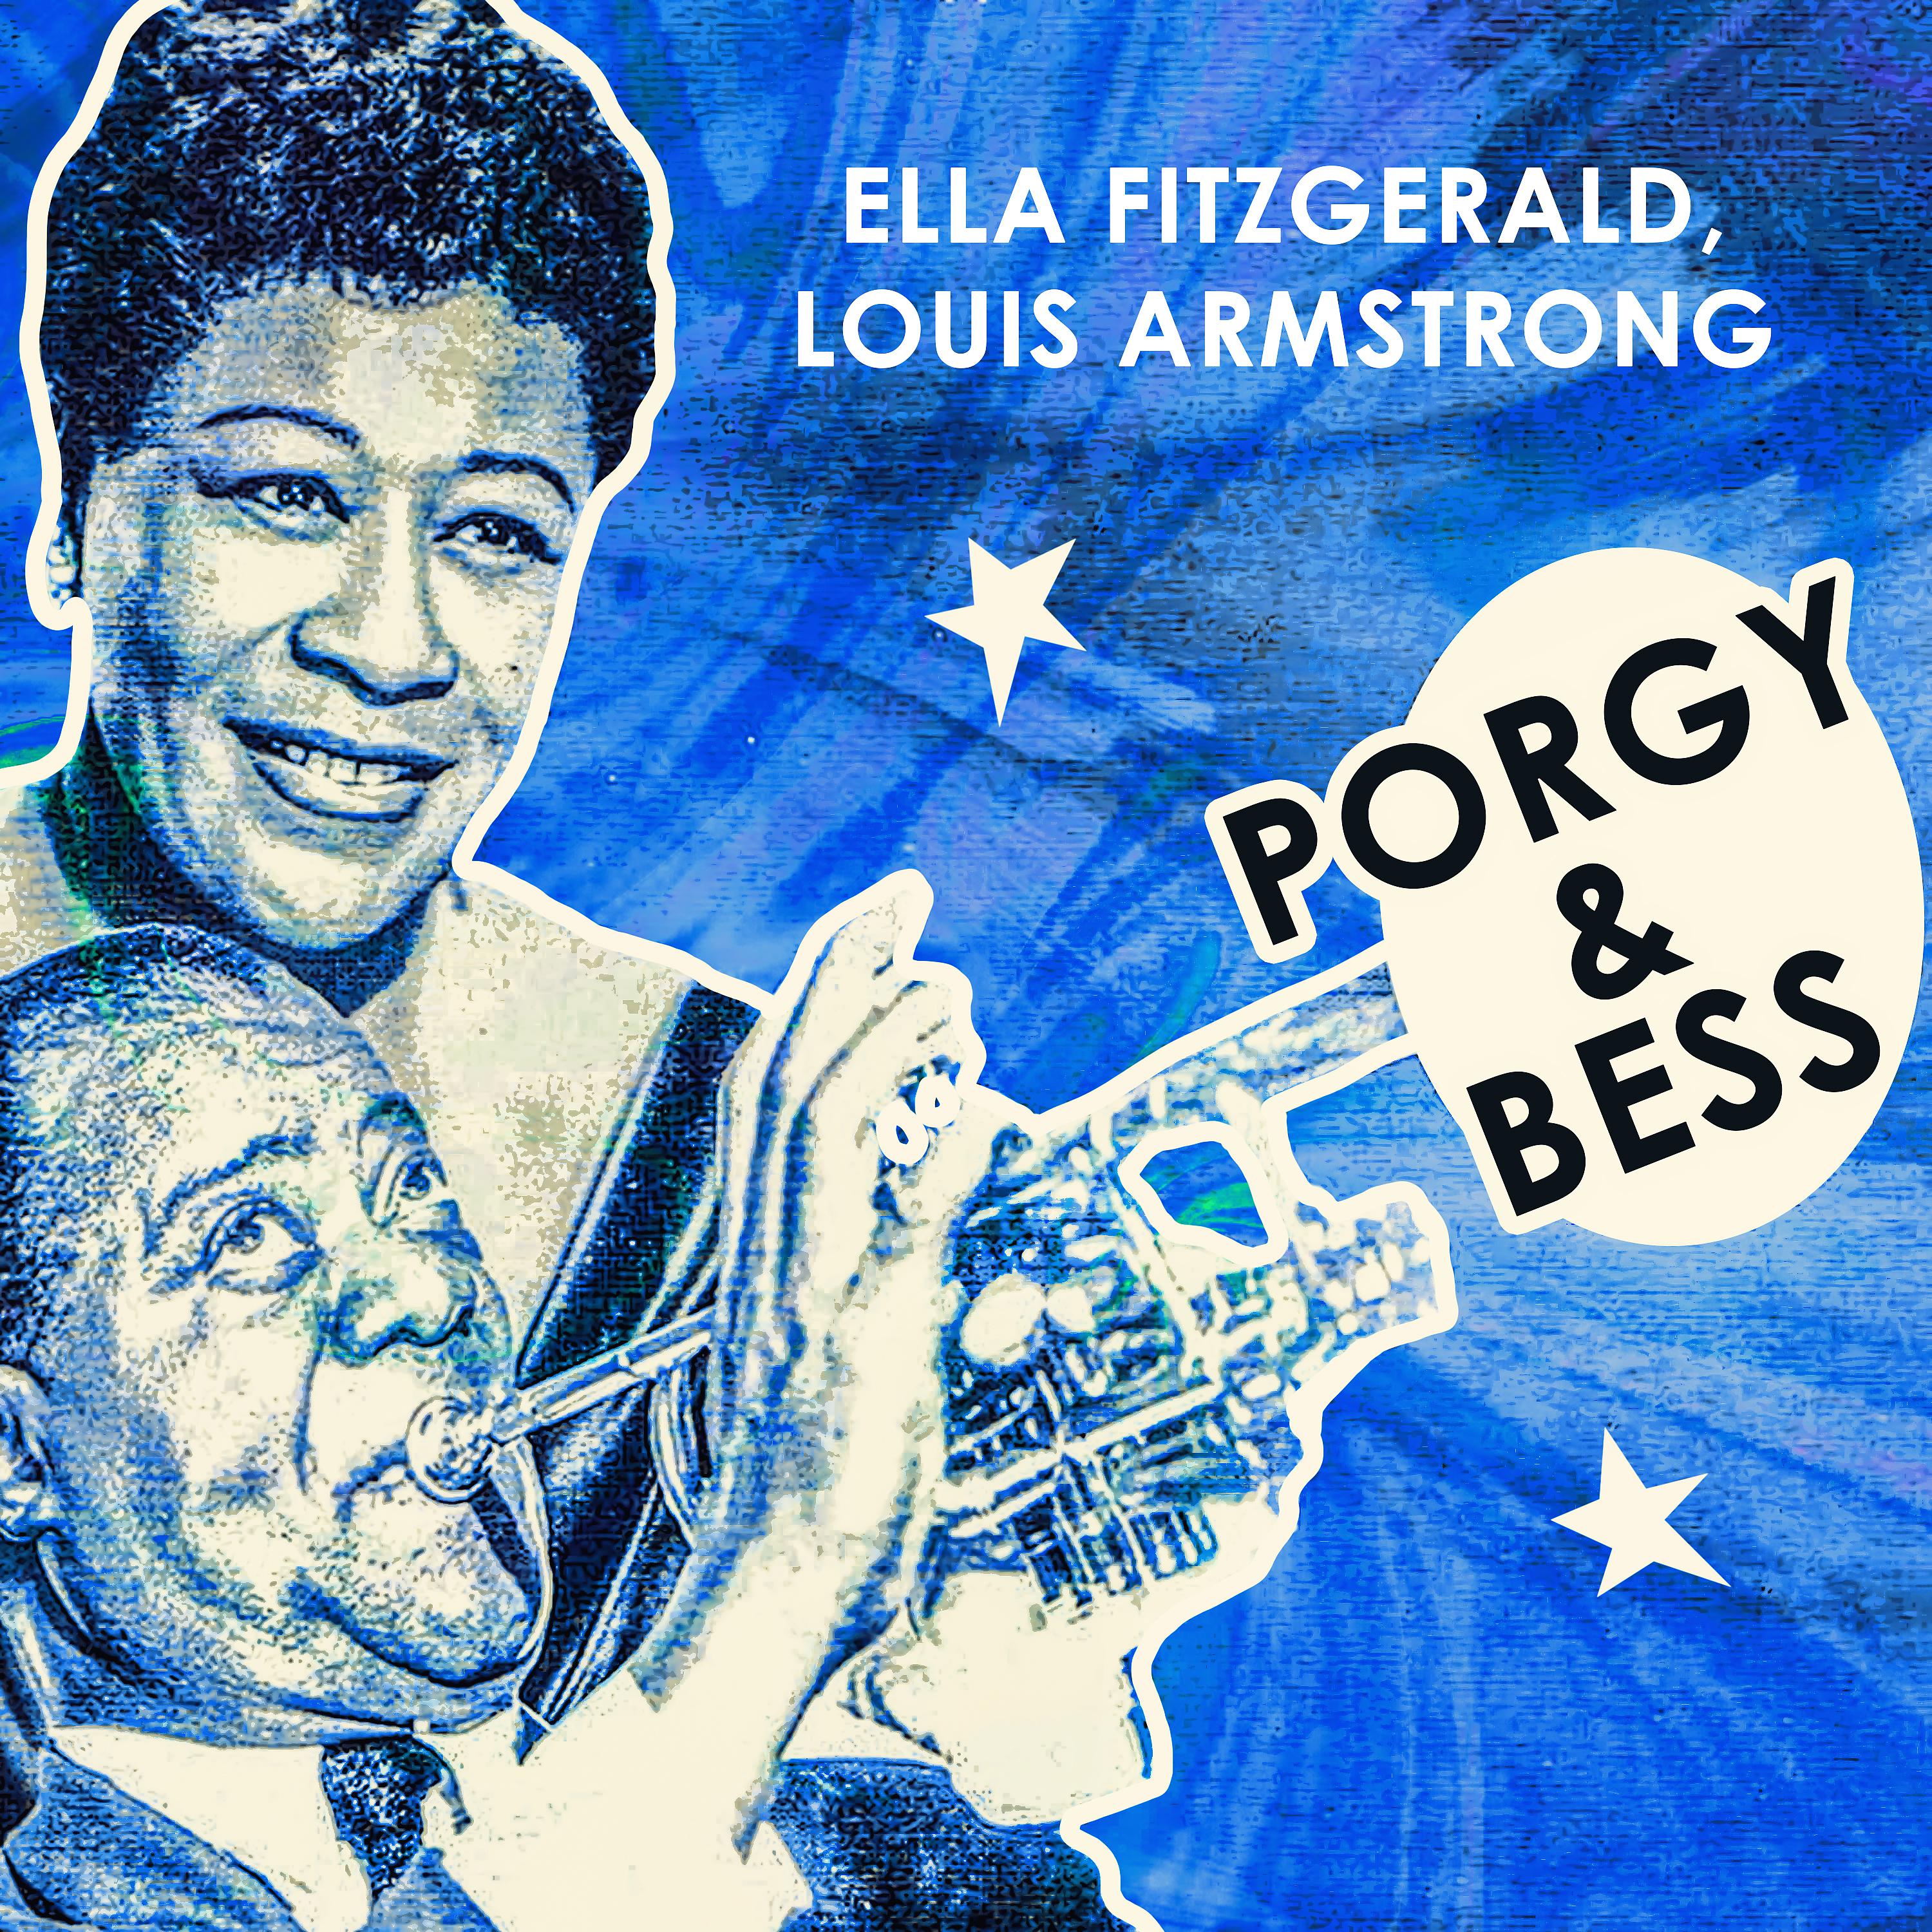 Постер альбома Porgy And Bess